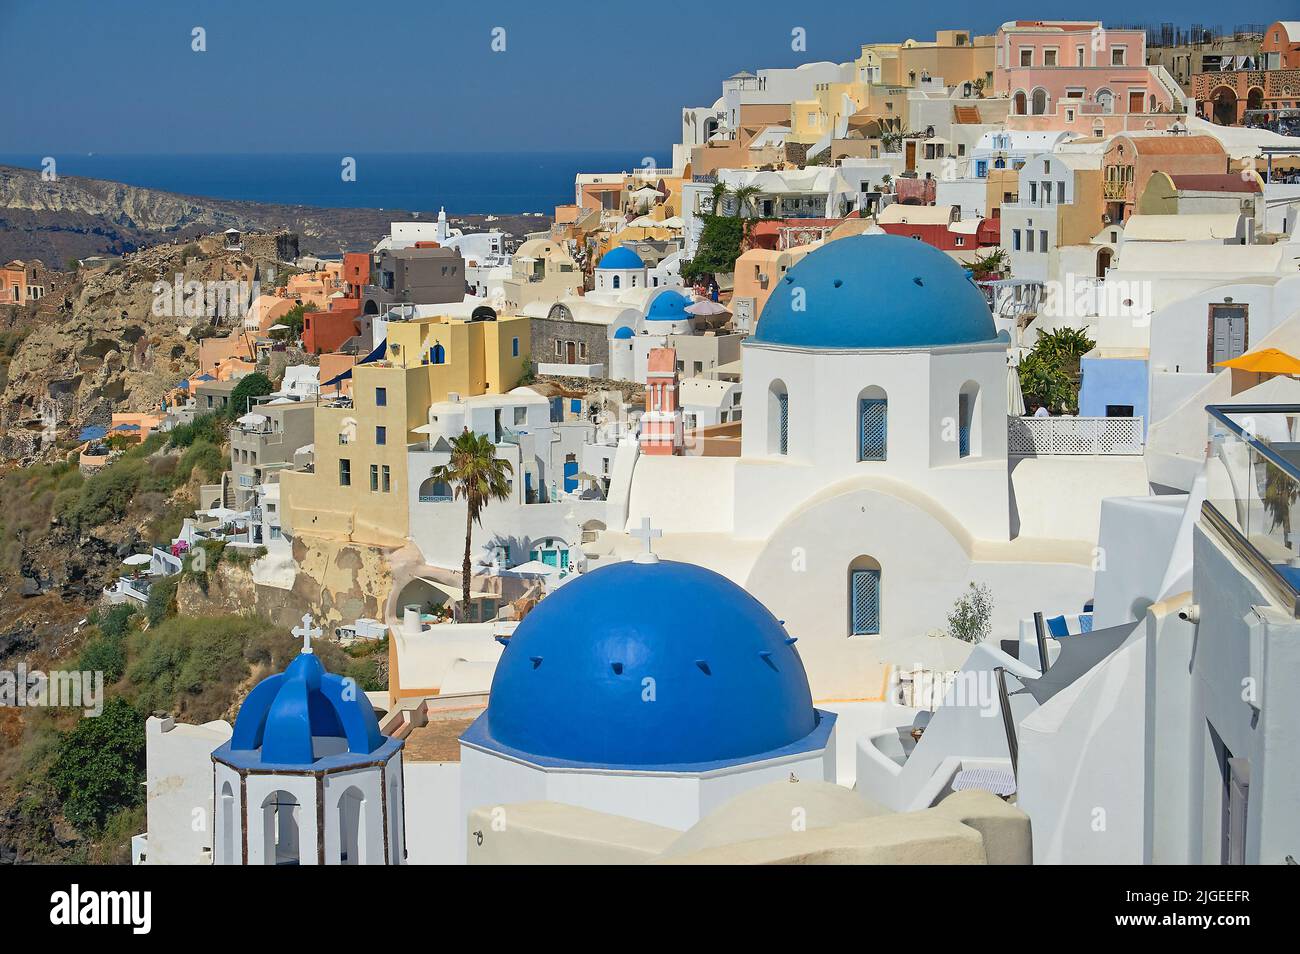 Oia, oder Ia ein malerisches Dorf mit weiß getünchten Häusern und blau gewölbten Kirchen auf der Insel Santorini, Teil der griechischen Kykladen-Inseln. Stockfoto